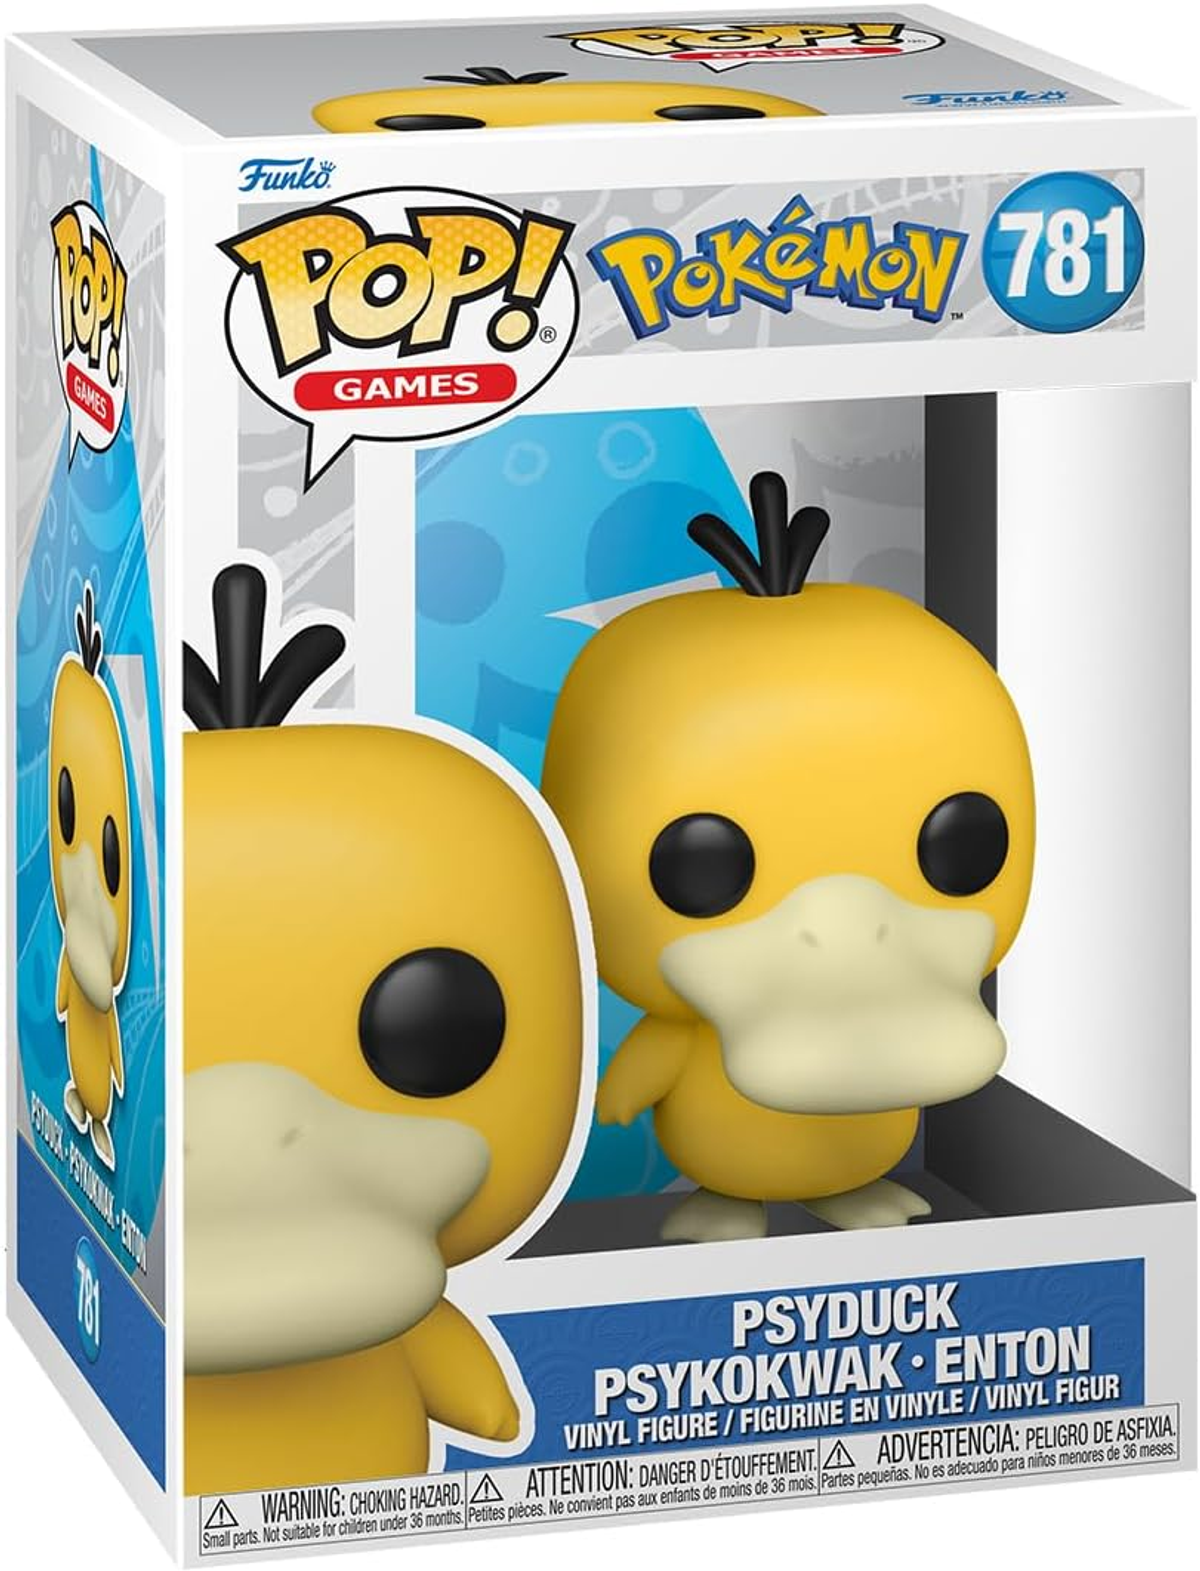 - Psyduck/Psykokwak Pokemon POP - - Enton